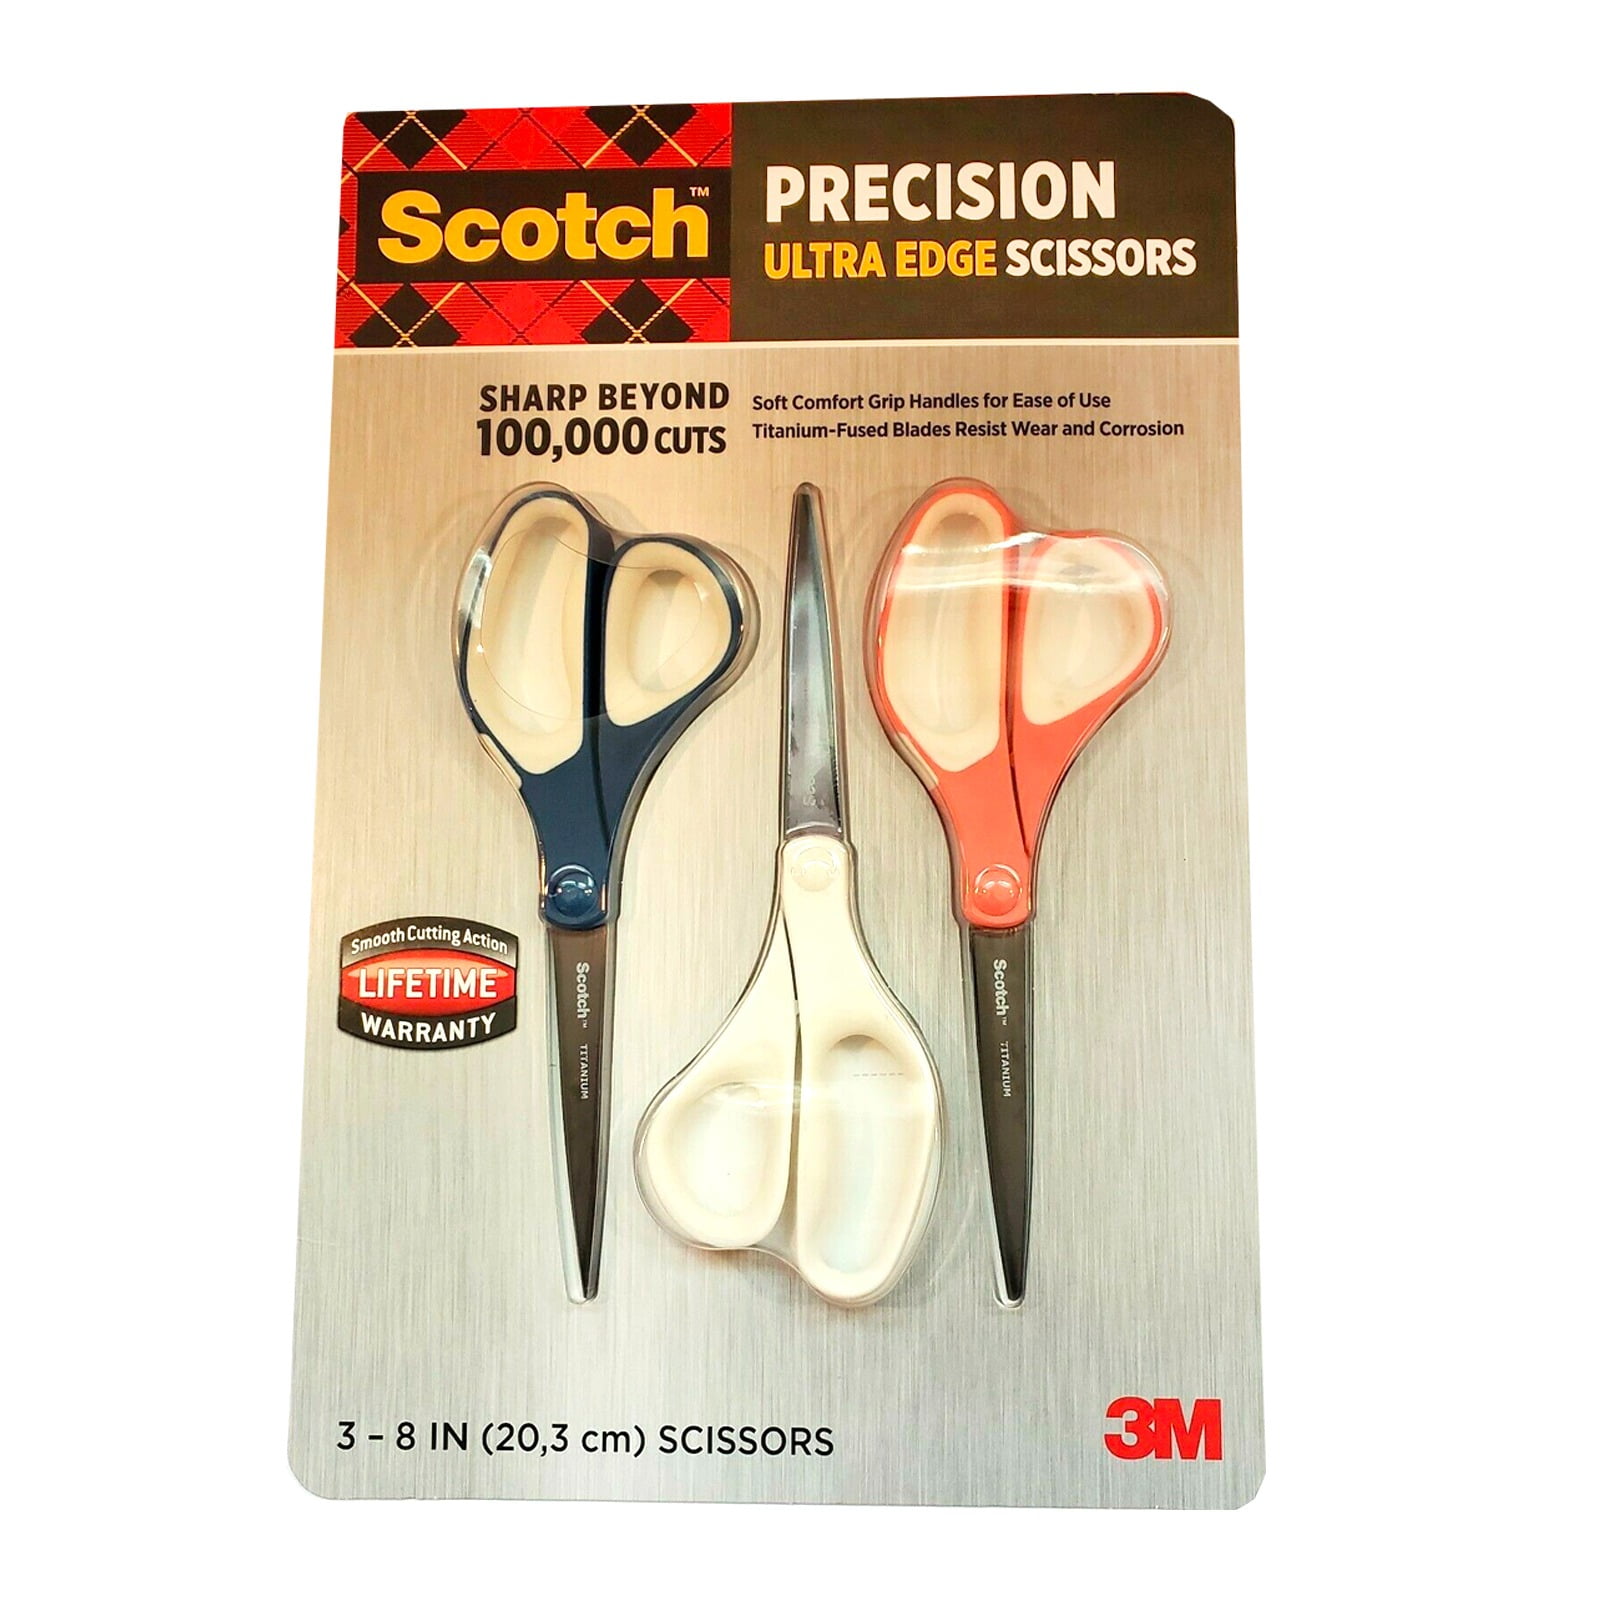 Scotch Non-Stick Precision Ultra Edge Scissors and Precision Scissors,  Multipack